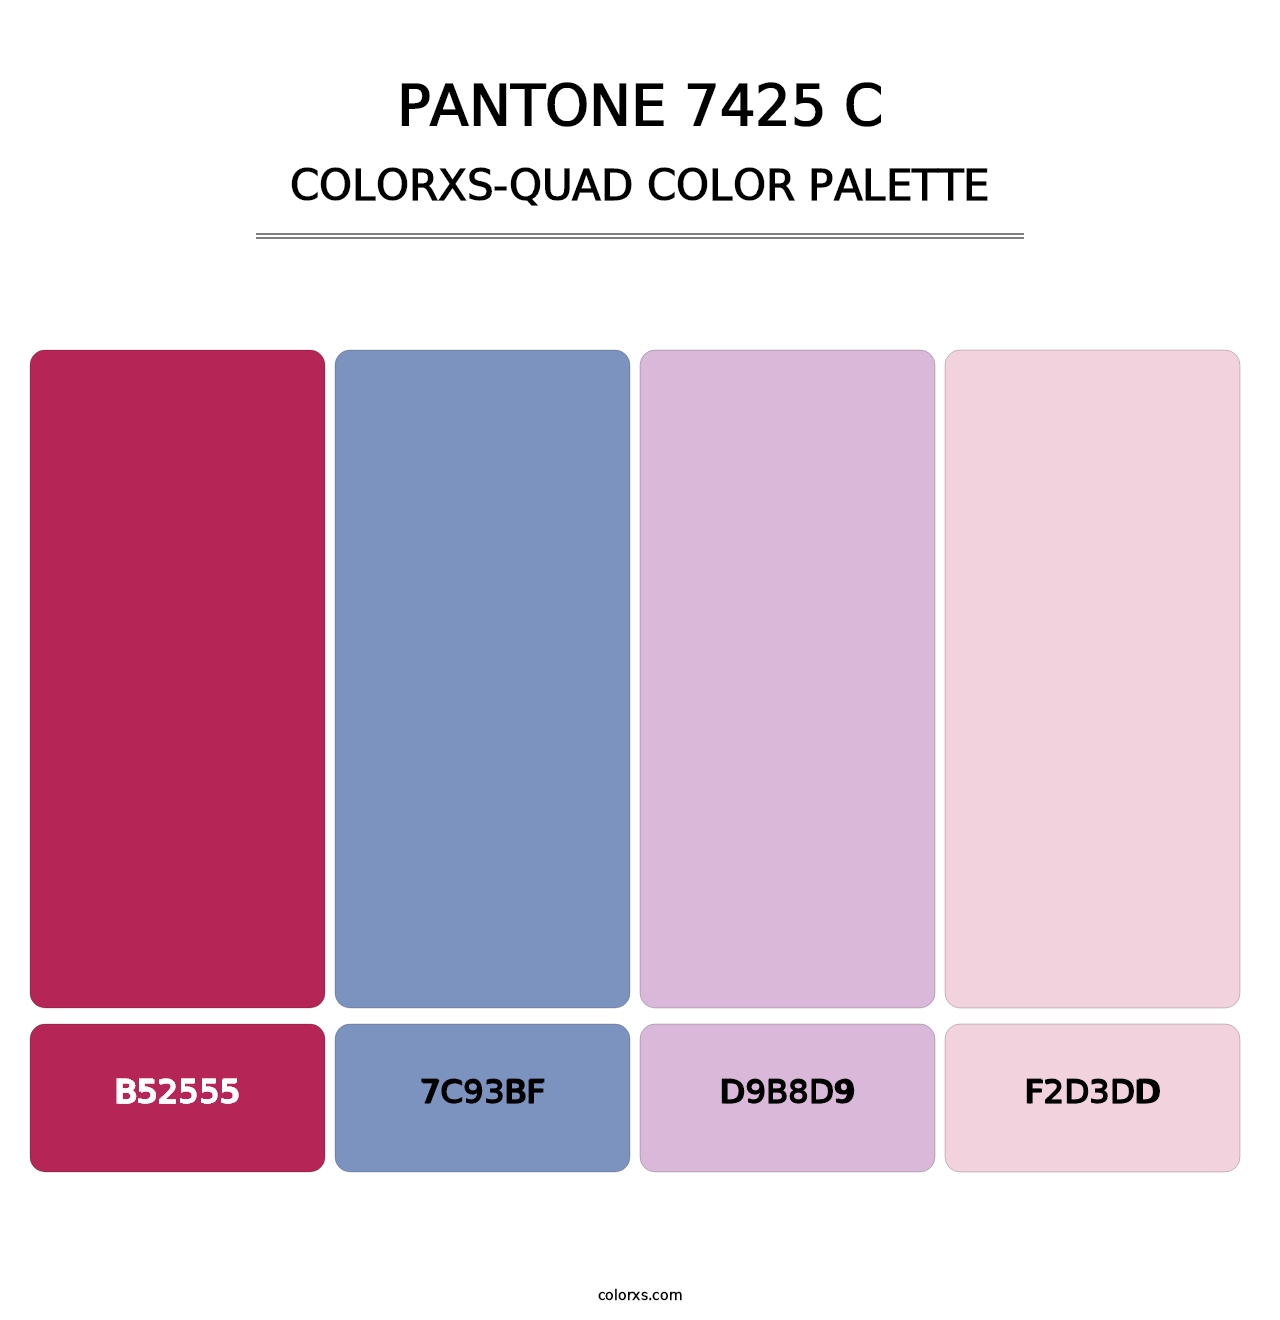 PANTONE 7425 C - Colorxs Quad Palette